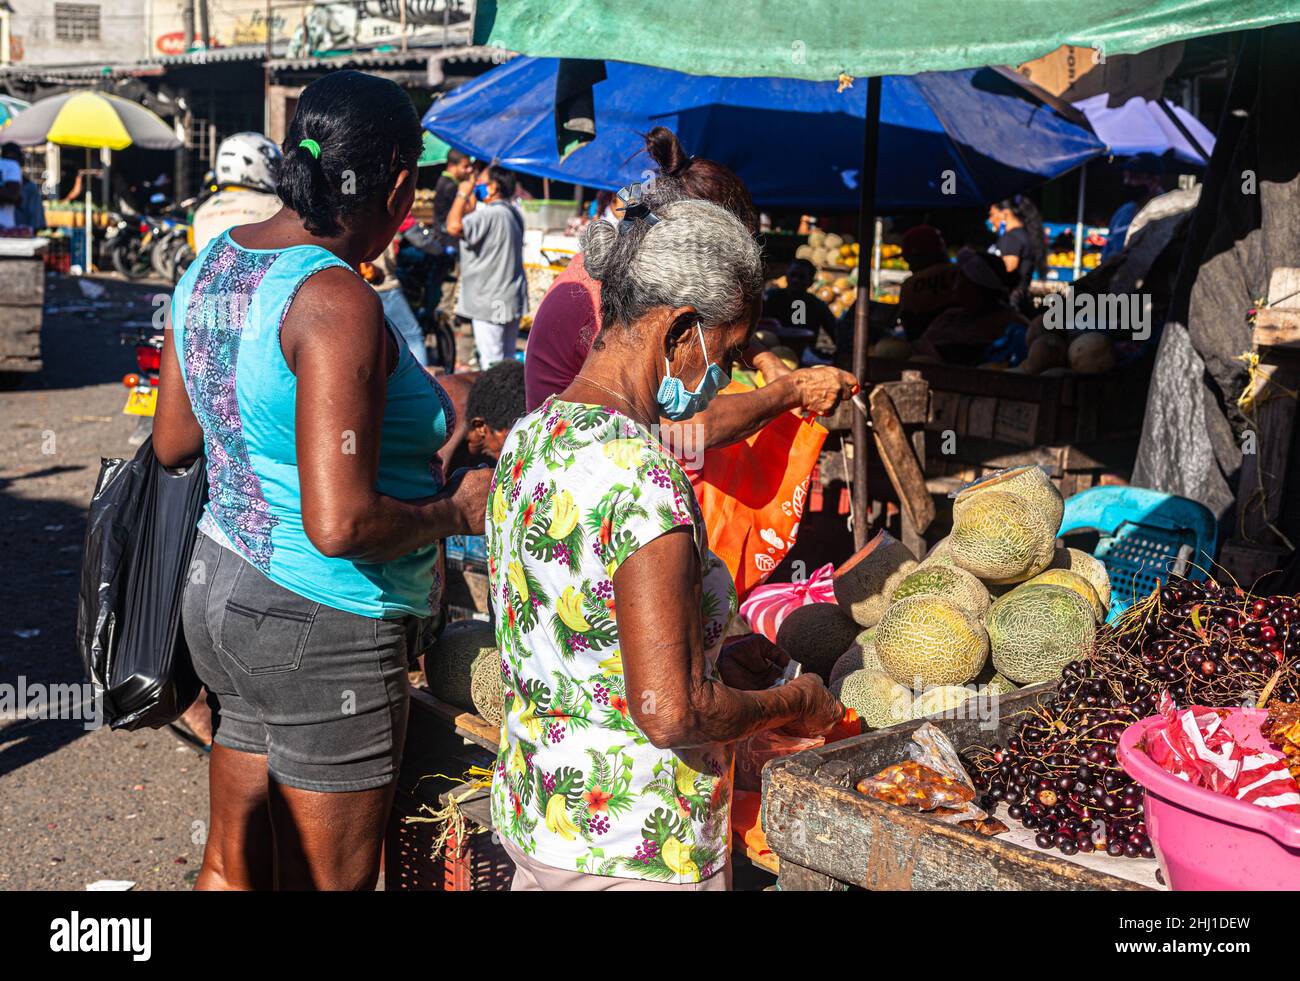 Daily activity at a tropical fruit stall, Mercado Bazurto, Cartagena de Indias, Colombia. Stock Photo